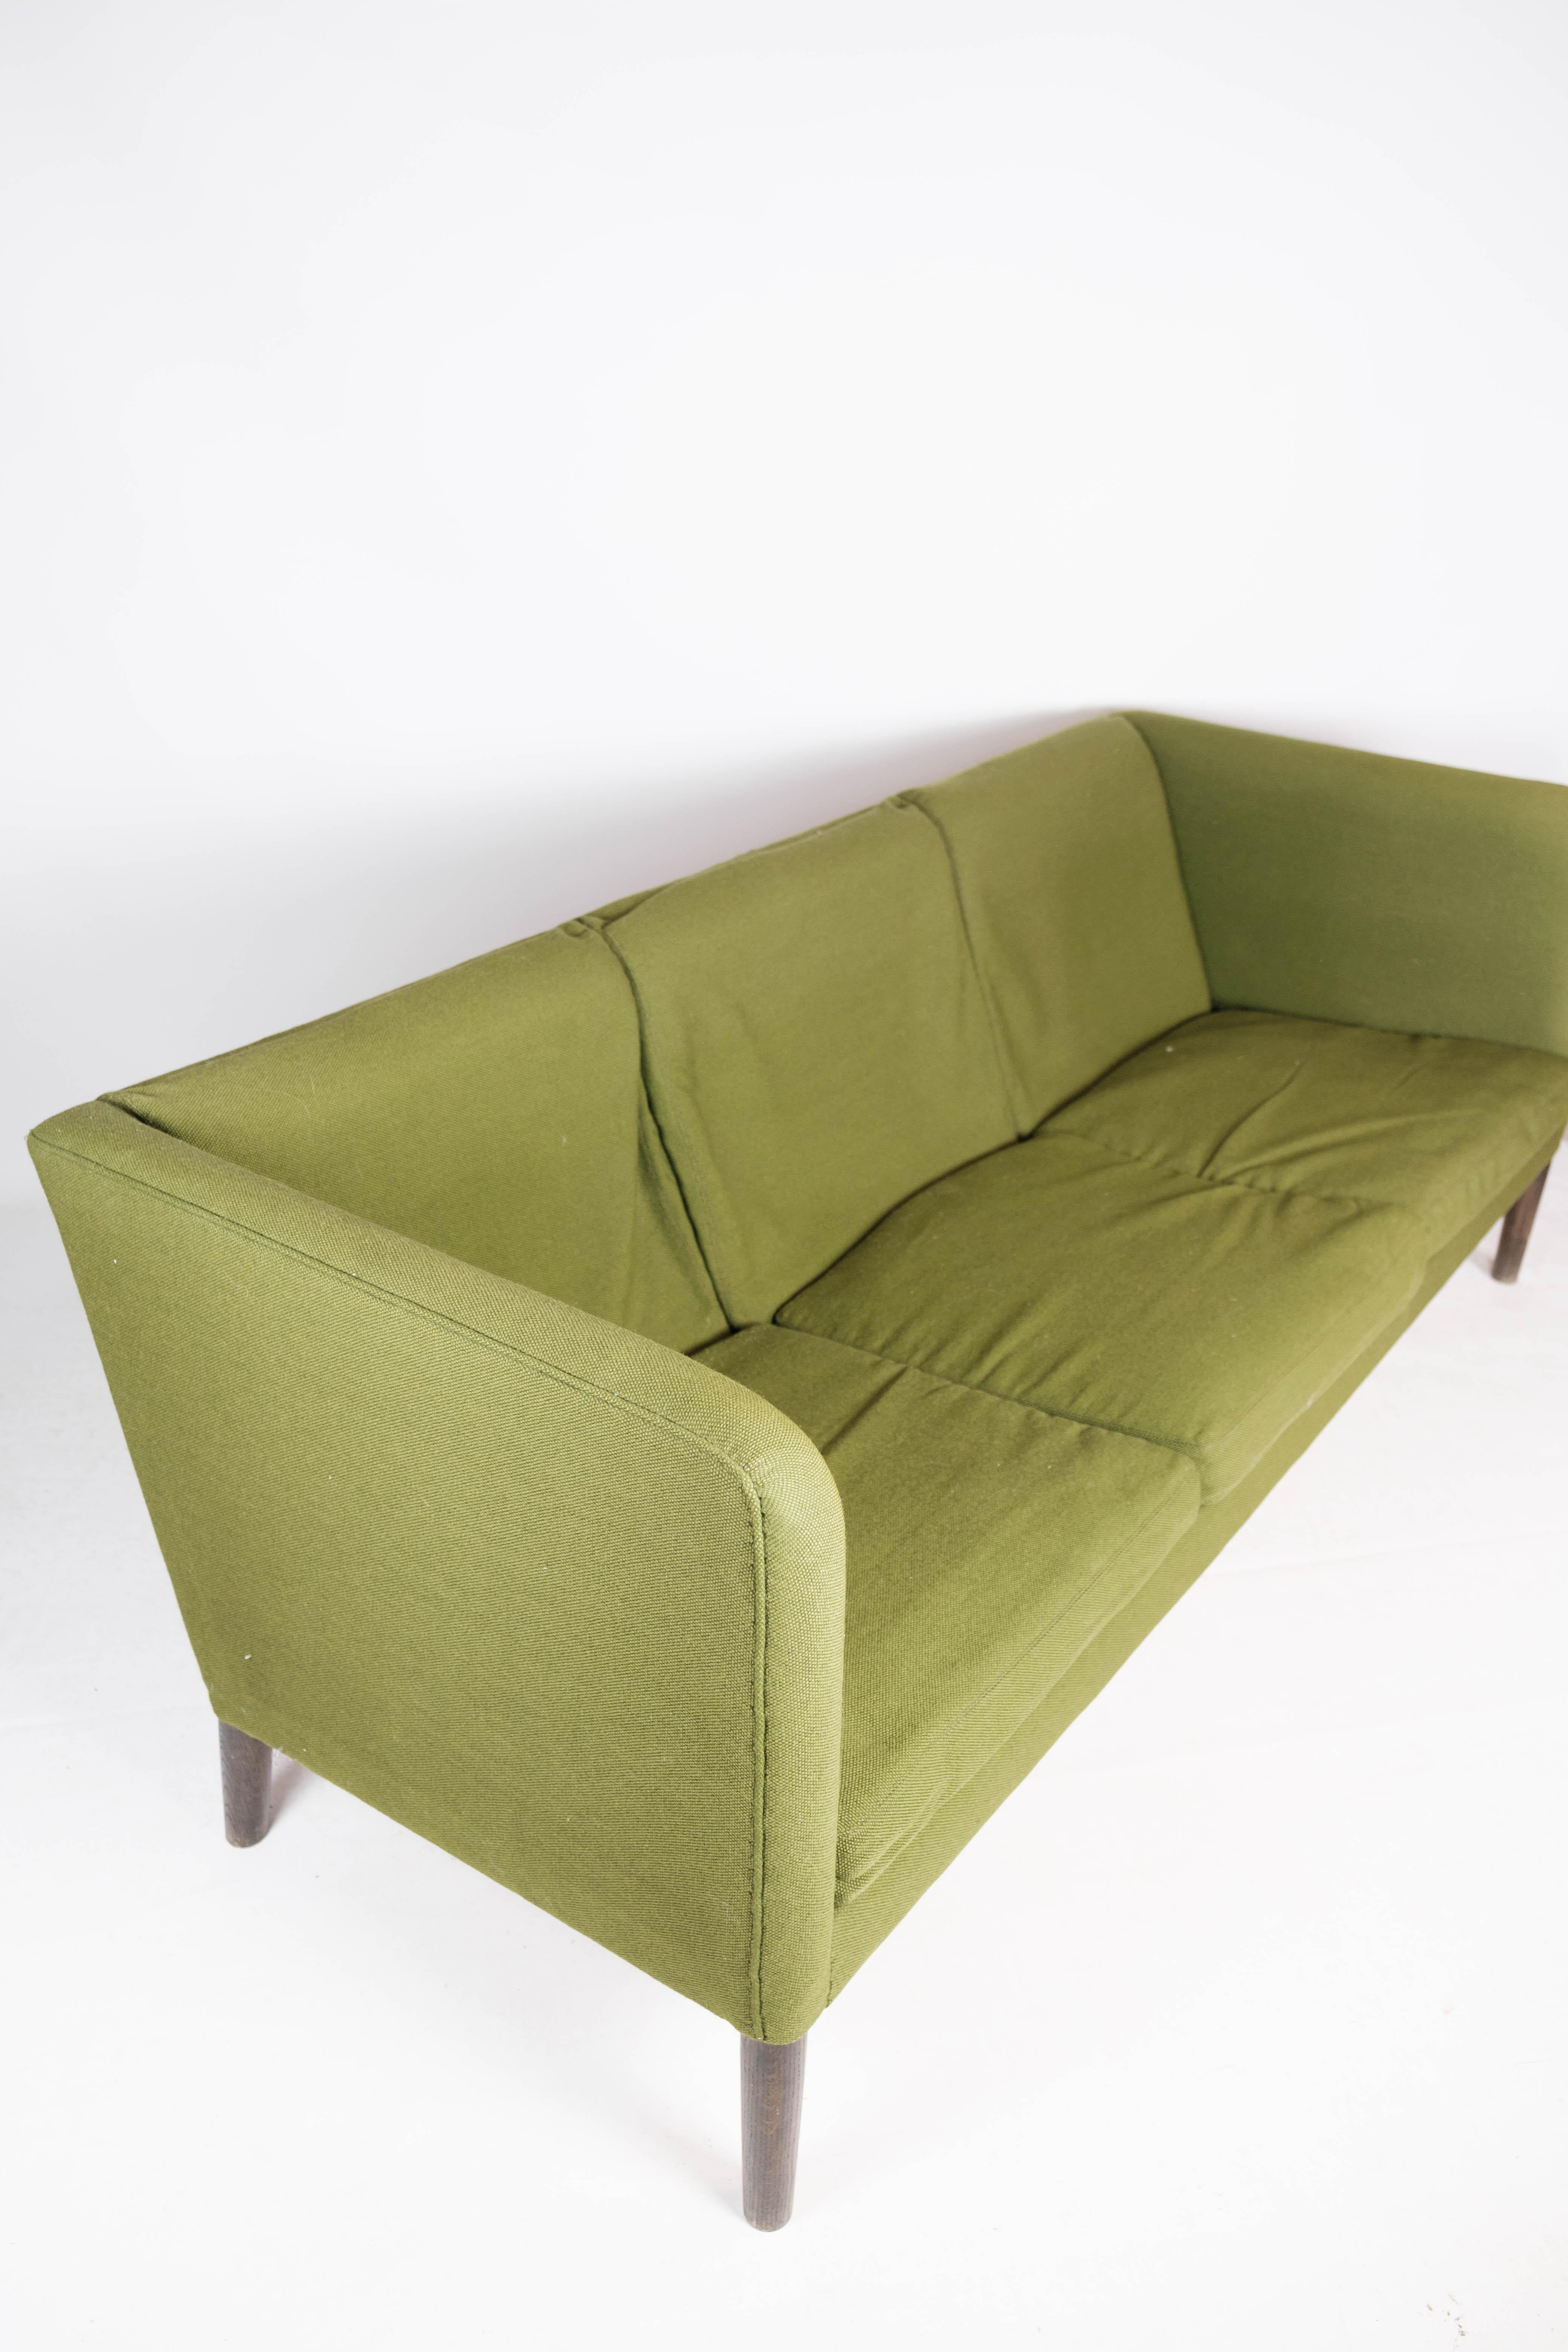 Three Seater Sofa, Model AP 18S, Designed by Hans J. Wegner, 1960s For Sale 4